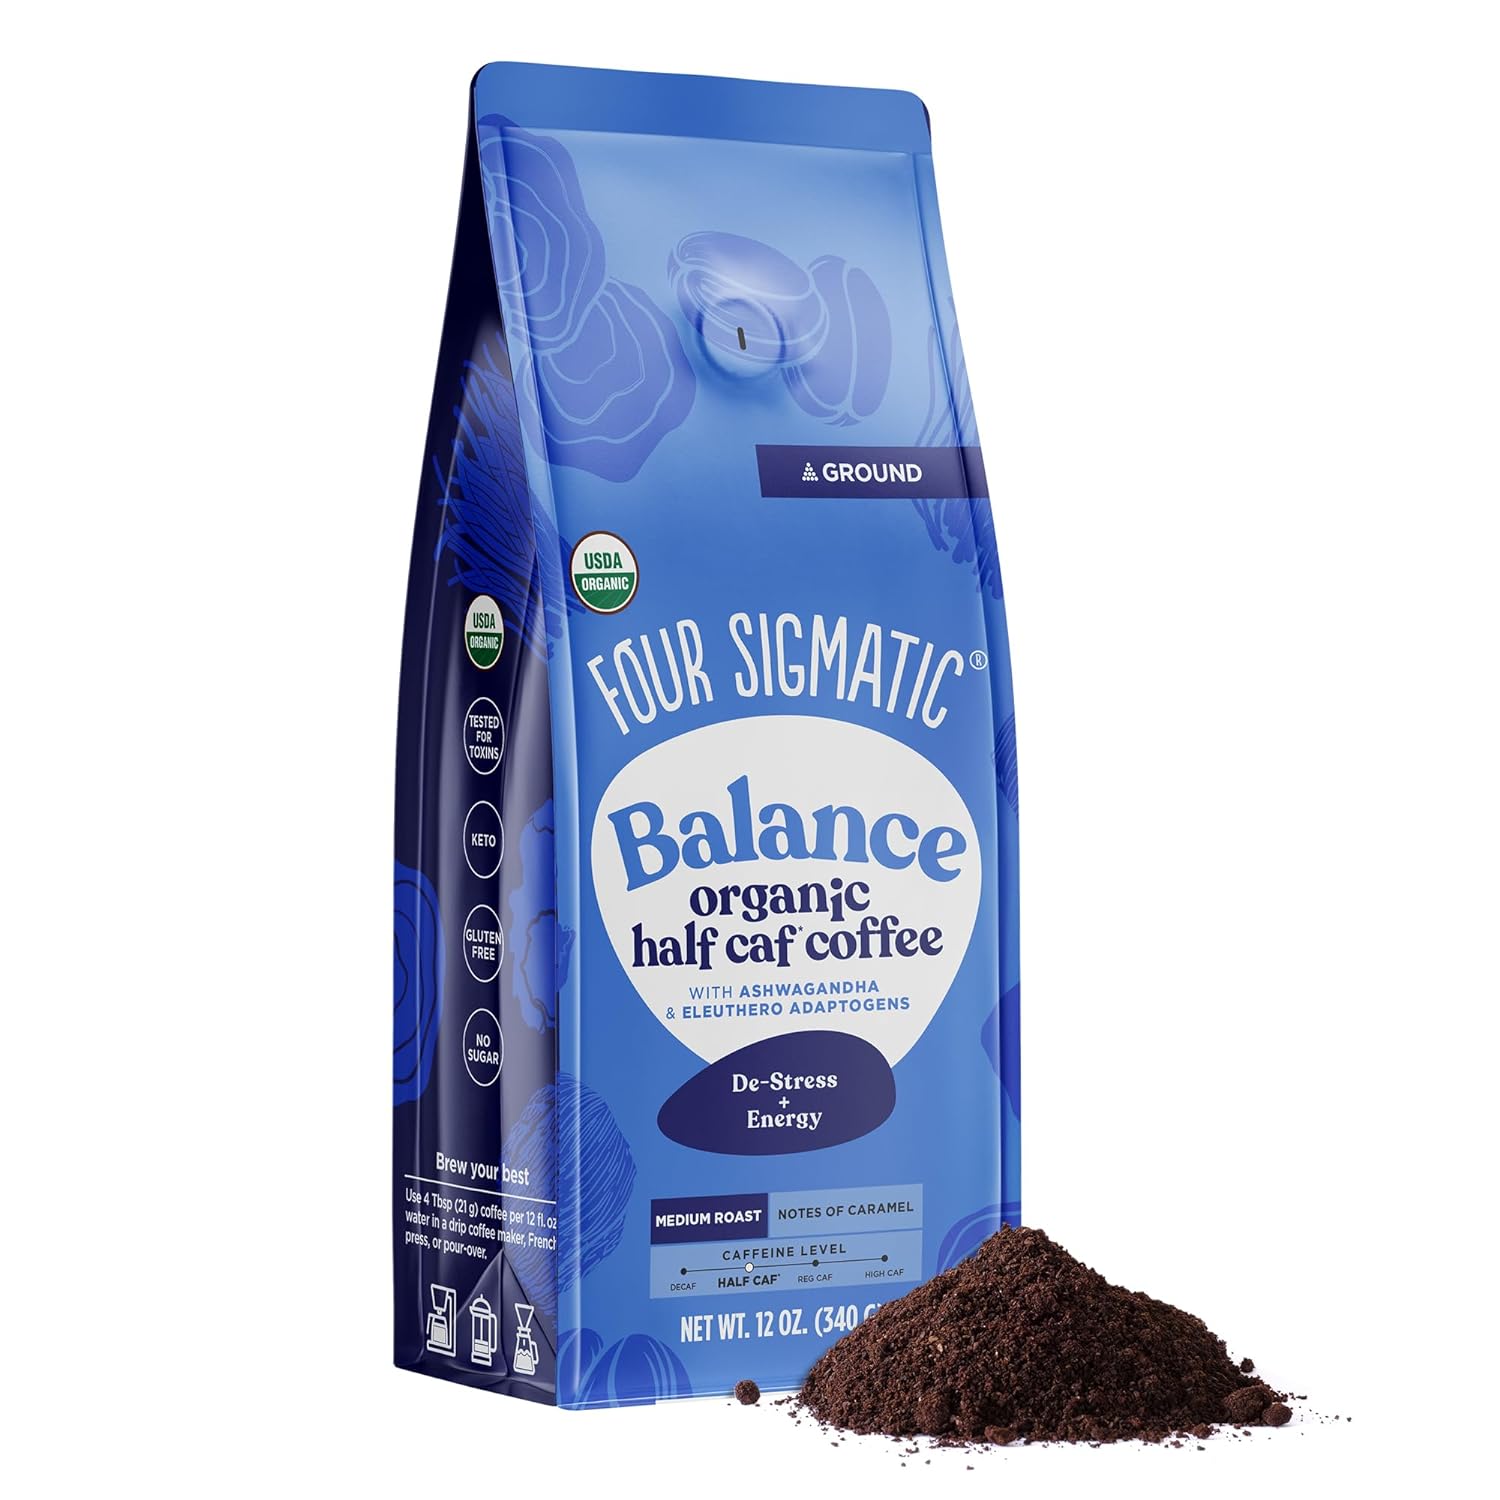 12-Oz Four Sigmatic Organic Adaptogen Coffee: Balance Half Caf w/ Ashwagandha & Eleuthero $10.51, Think Dark Roast w/ Lion's Mane & Chaga $10.56 w/ S&S + Free Shipping on $35+